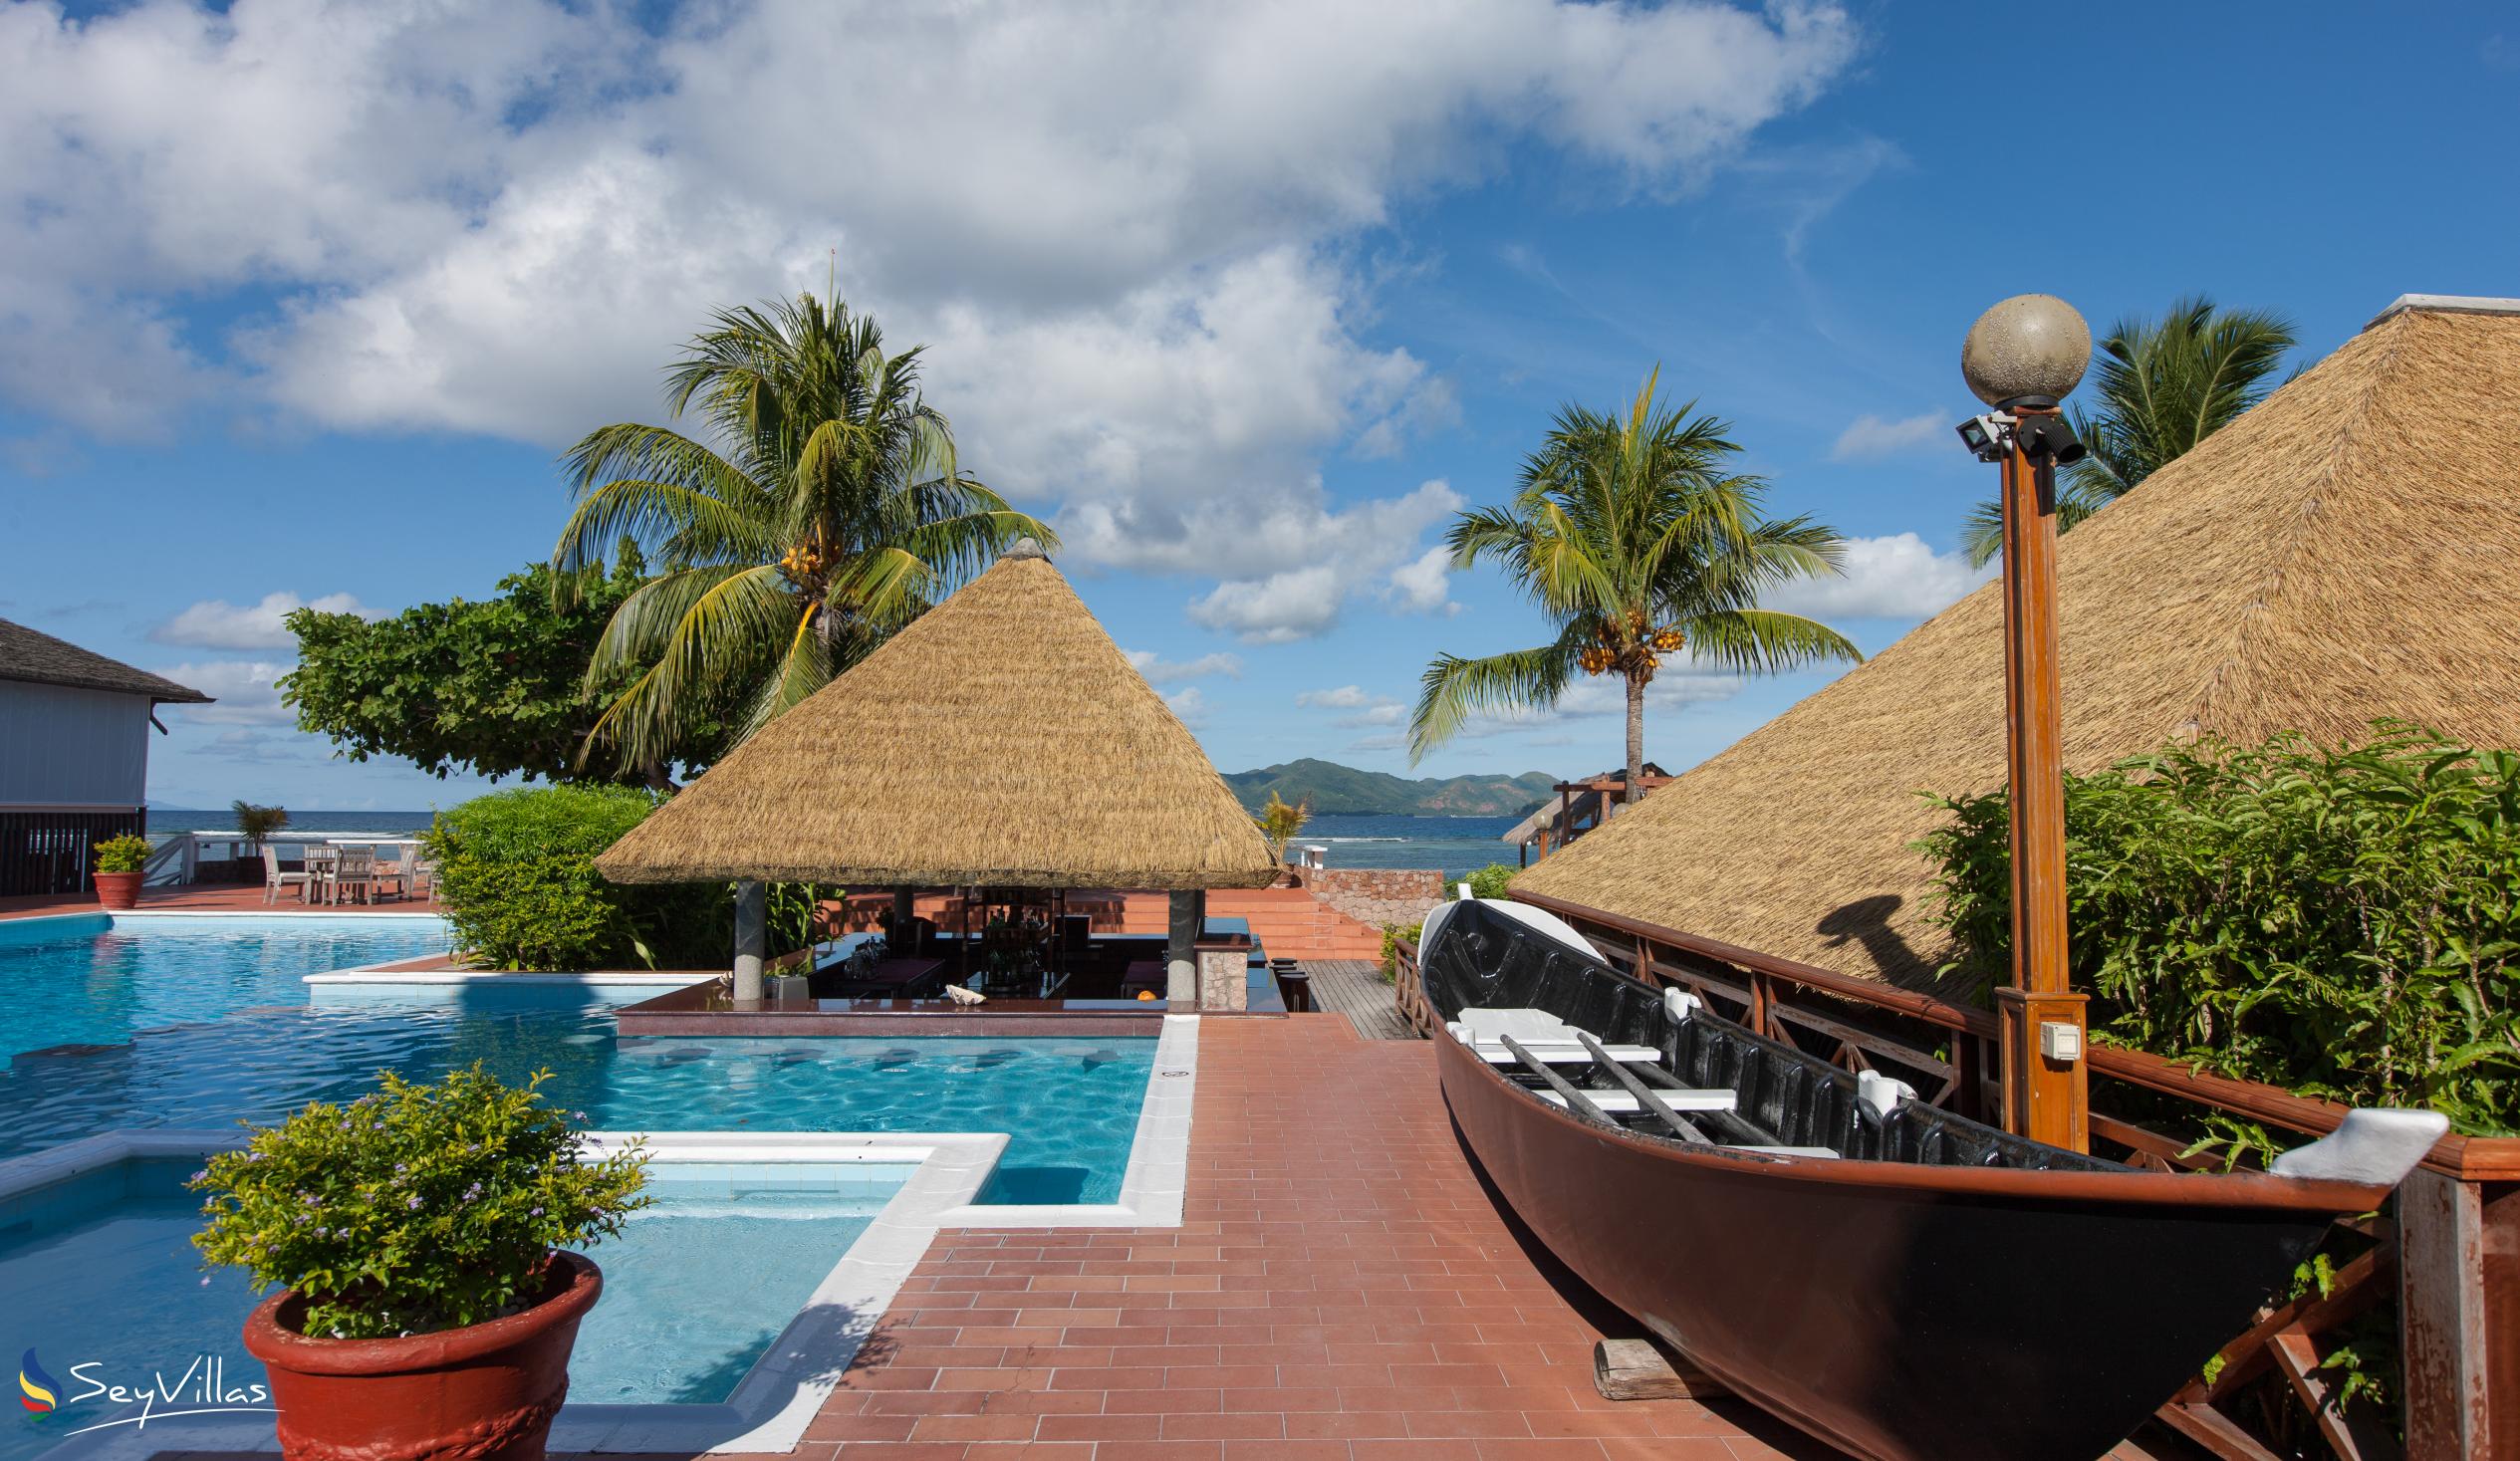 Photo 8: La Digue Island Lodge - Outdoor area - La Digue (Seychelles)